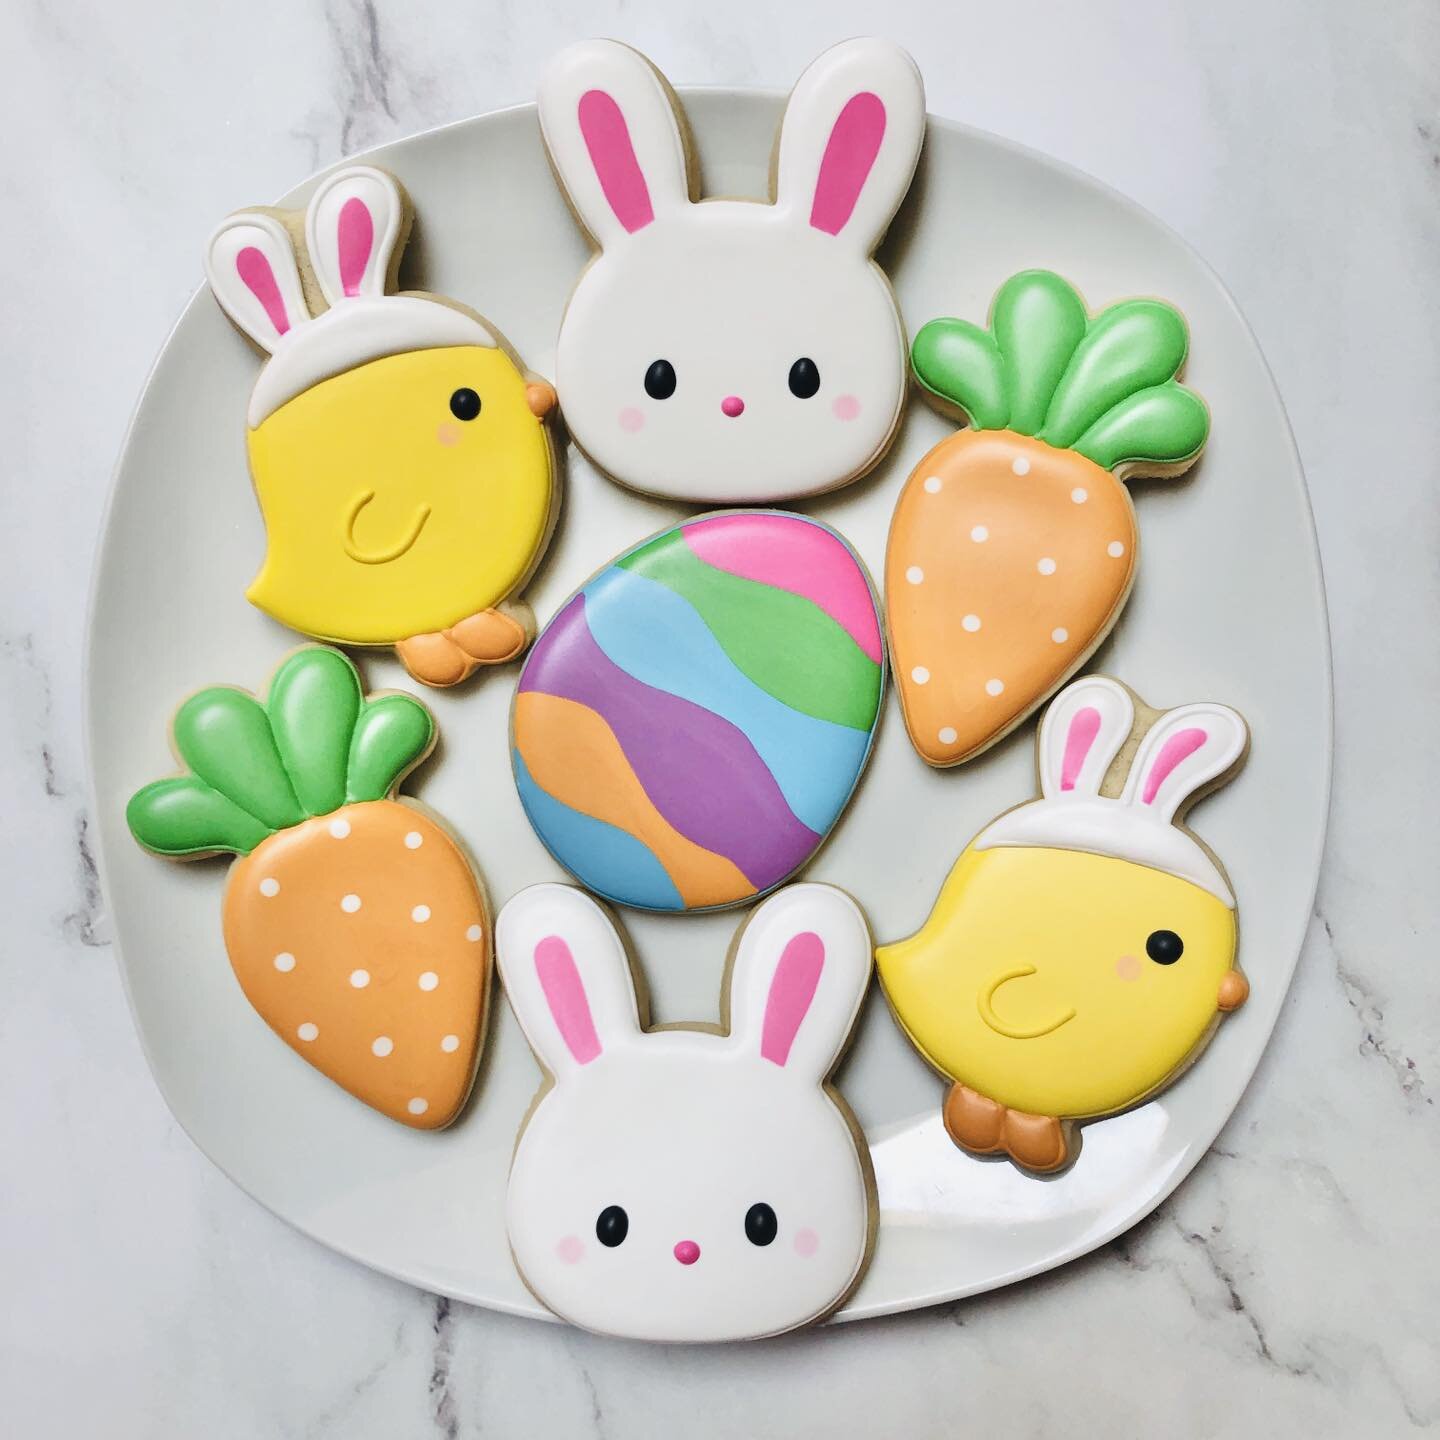 Easter cookies! 🩷🥕🐰🐤🥚
.
.
.
. 
#eastercookies #easter #bunnycookies #springcookies #carrotcookies #royalicing #royalicingcookies #decoratedsugarcookies #customcookies #sugarart #sugarcraft #edibleart #cookieart #instabake #instasweet #sugarcooki